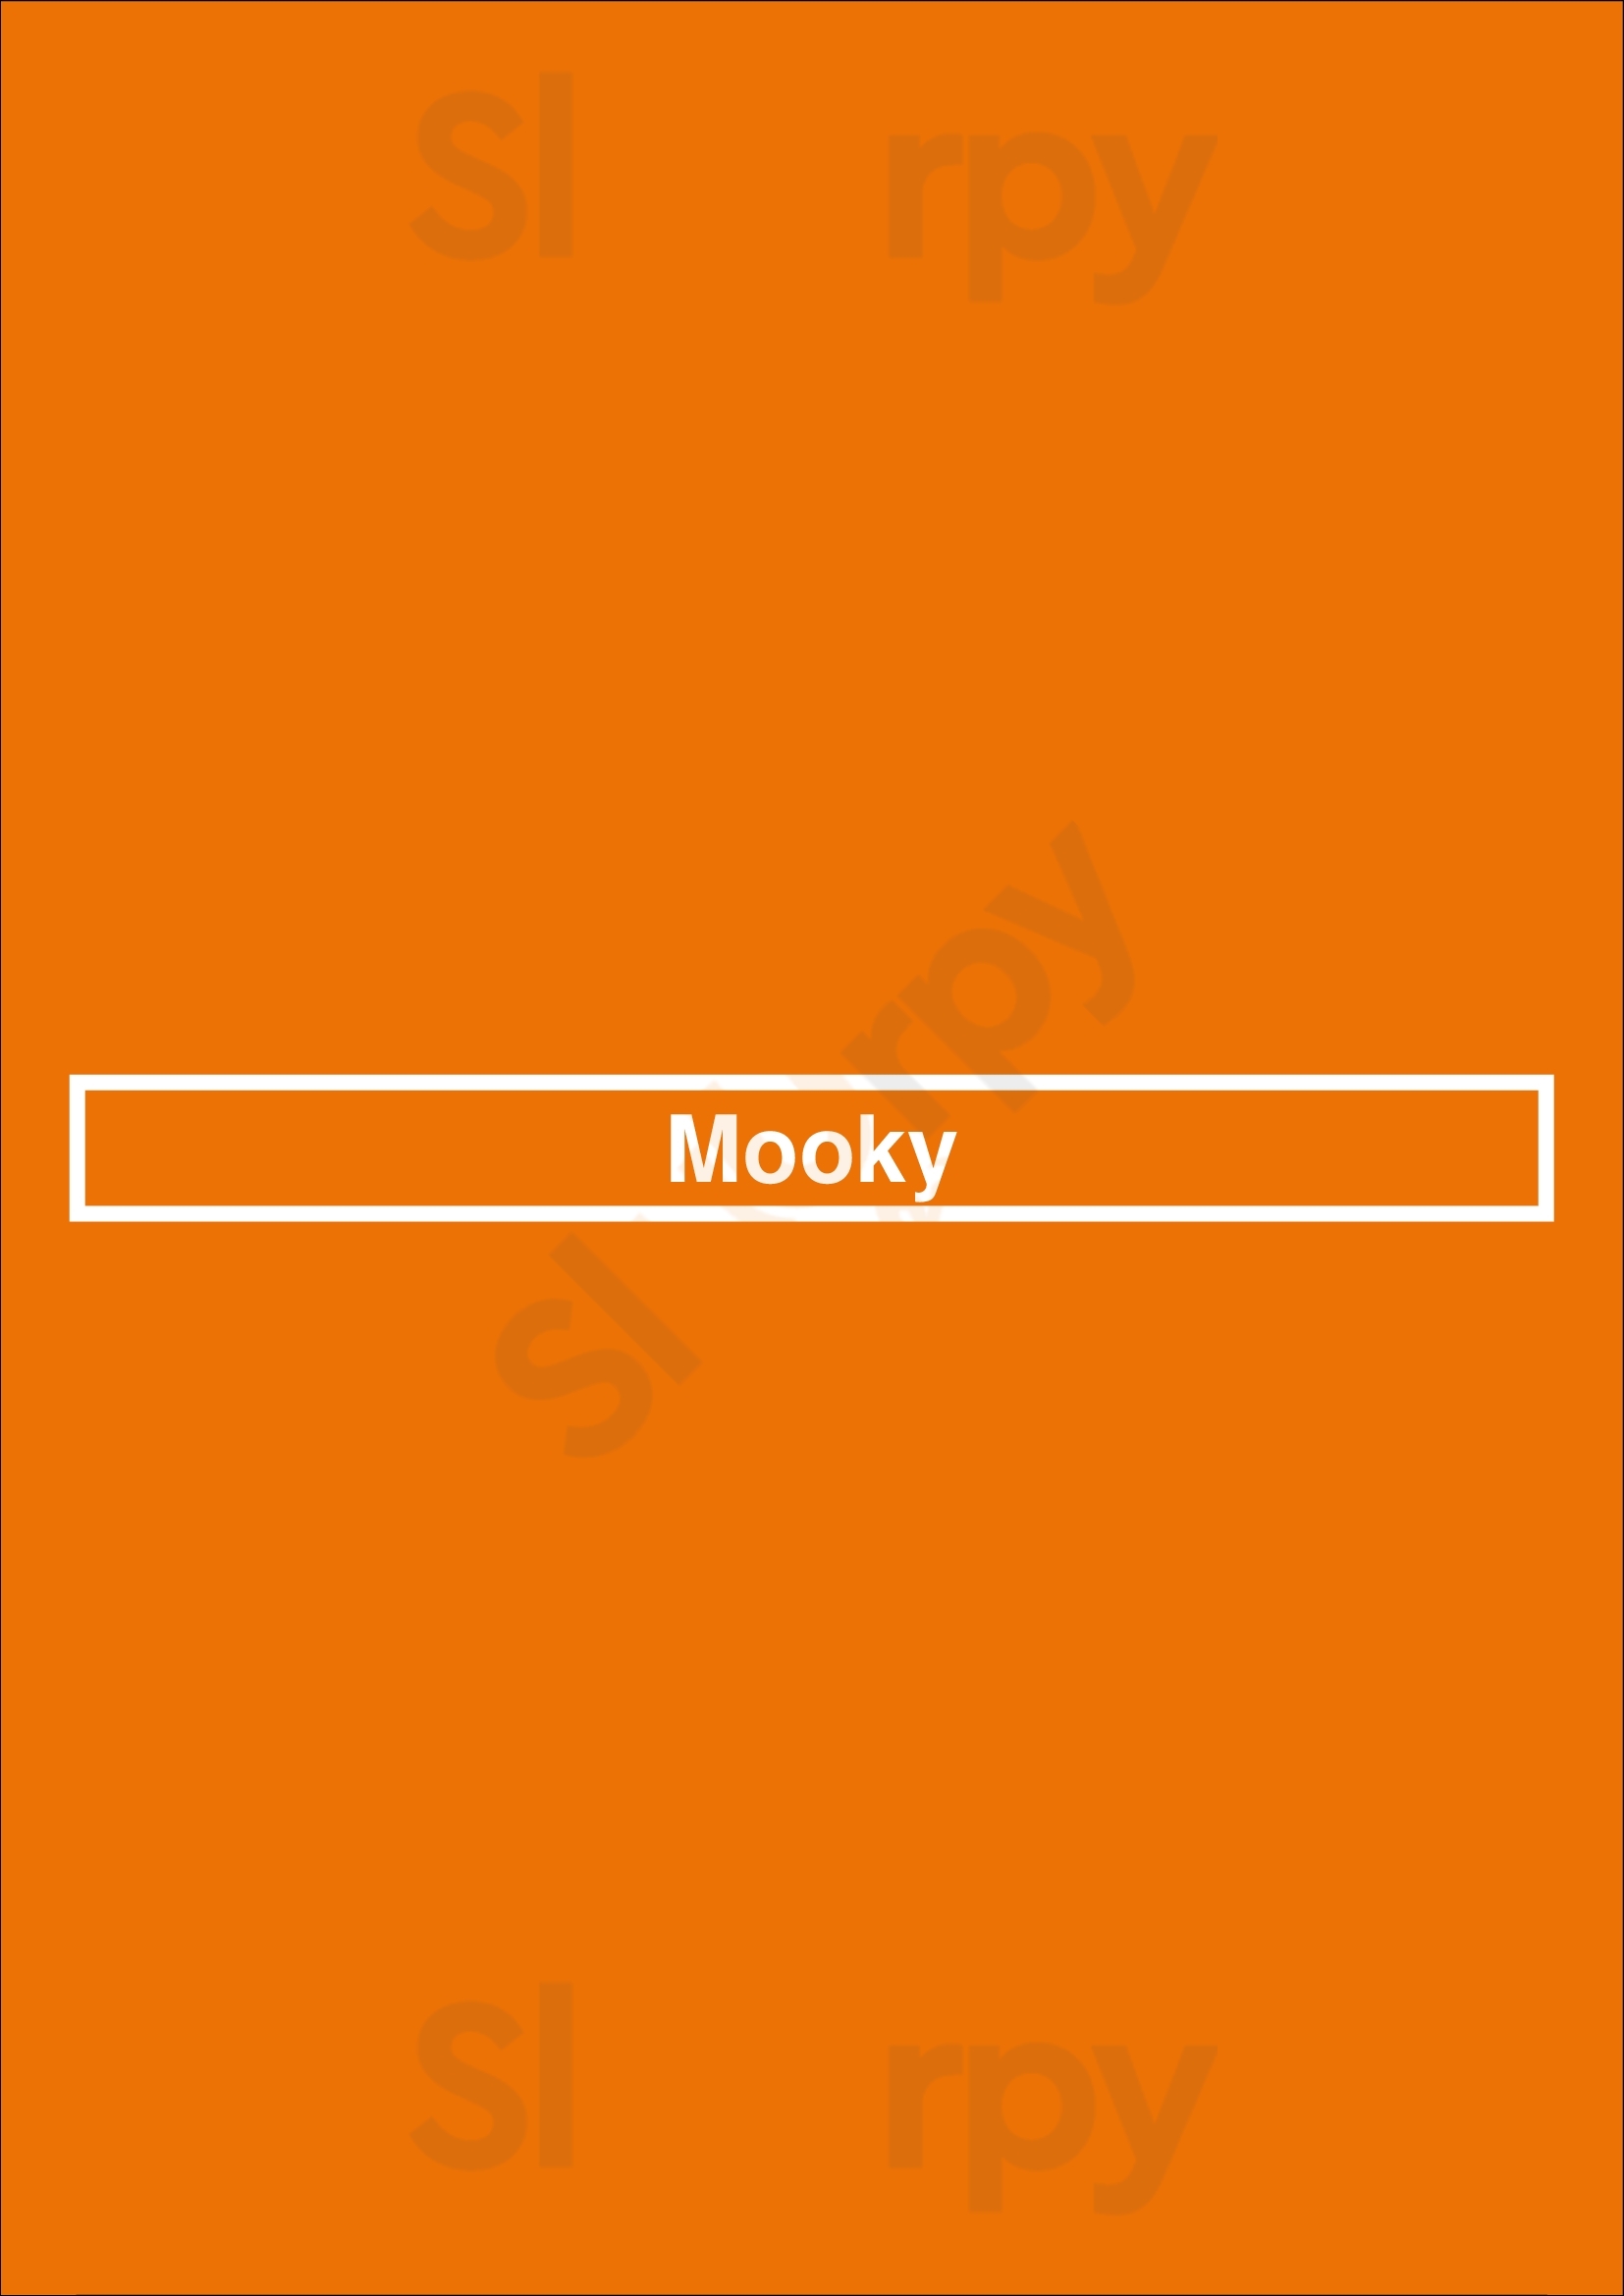 Mooky Paris Menu - 1